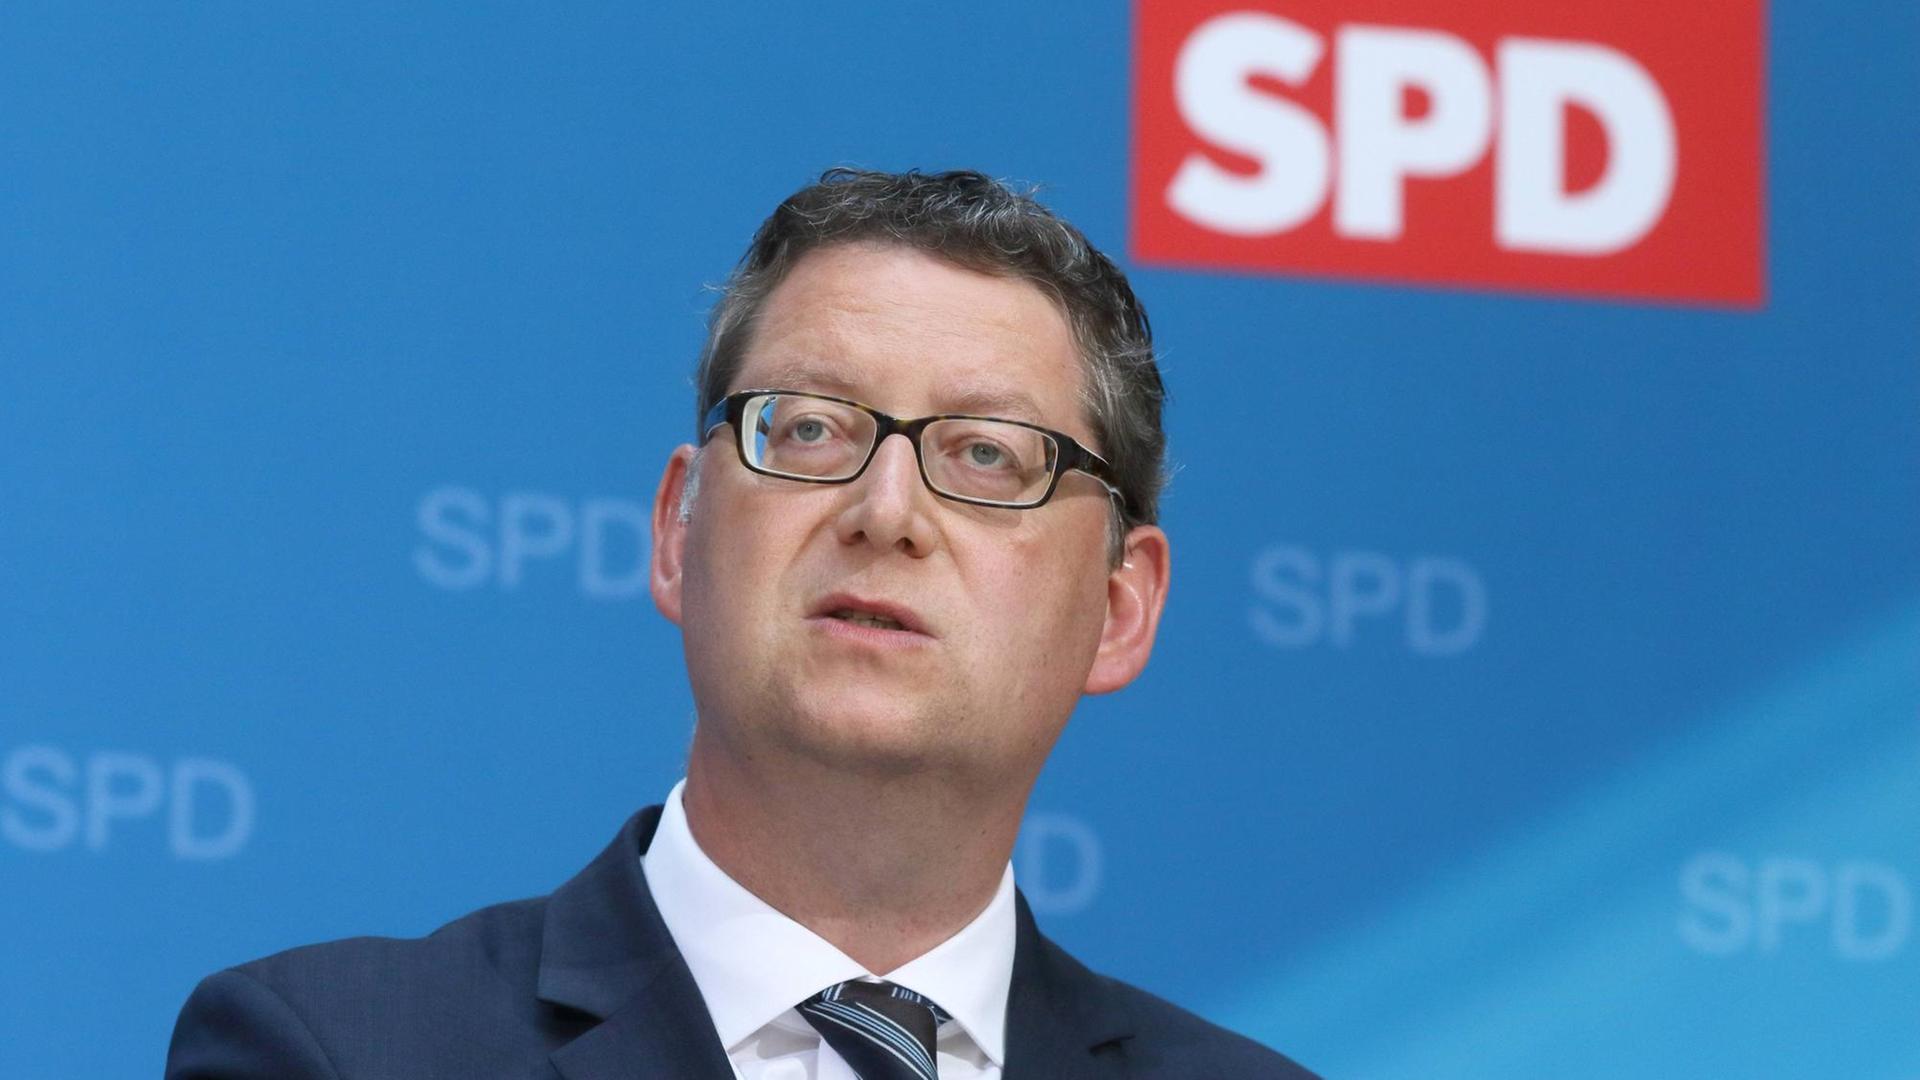 Thorsten Schäfer-Gümbel (Stellvertretender Parteivorsitzender, SPD) bei der Vorstellung des SPD-Steuerkonzepts zur Bundestagswahl 2017 anlässlich einer Pressekonferenz im Atrium des Willy-Brandt-Hauses am 19.06.2017 in Berlin.